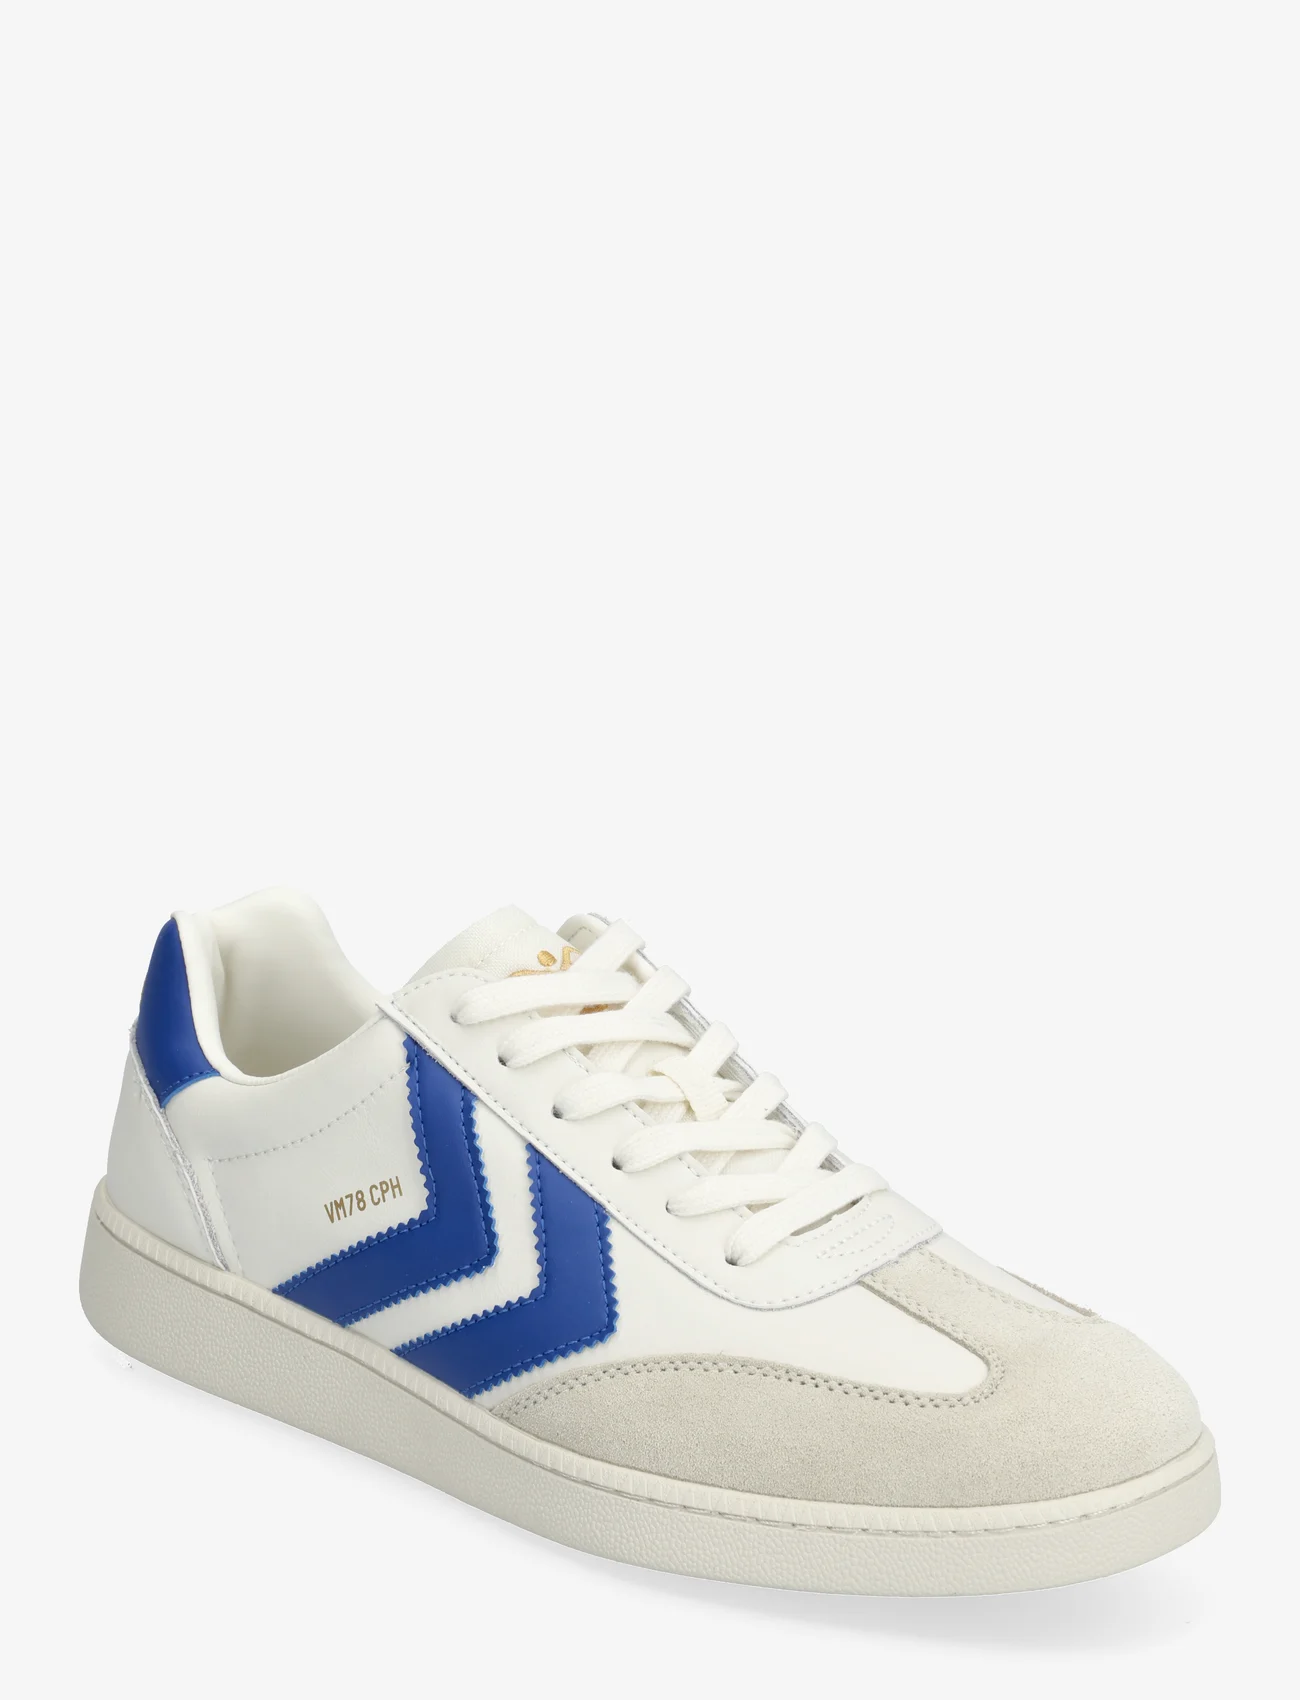 Hummel - VM78 CPH ML - low top sneakers - white/true blue - 0